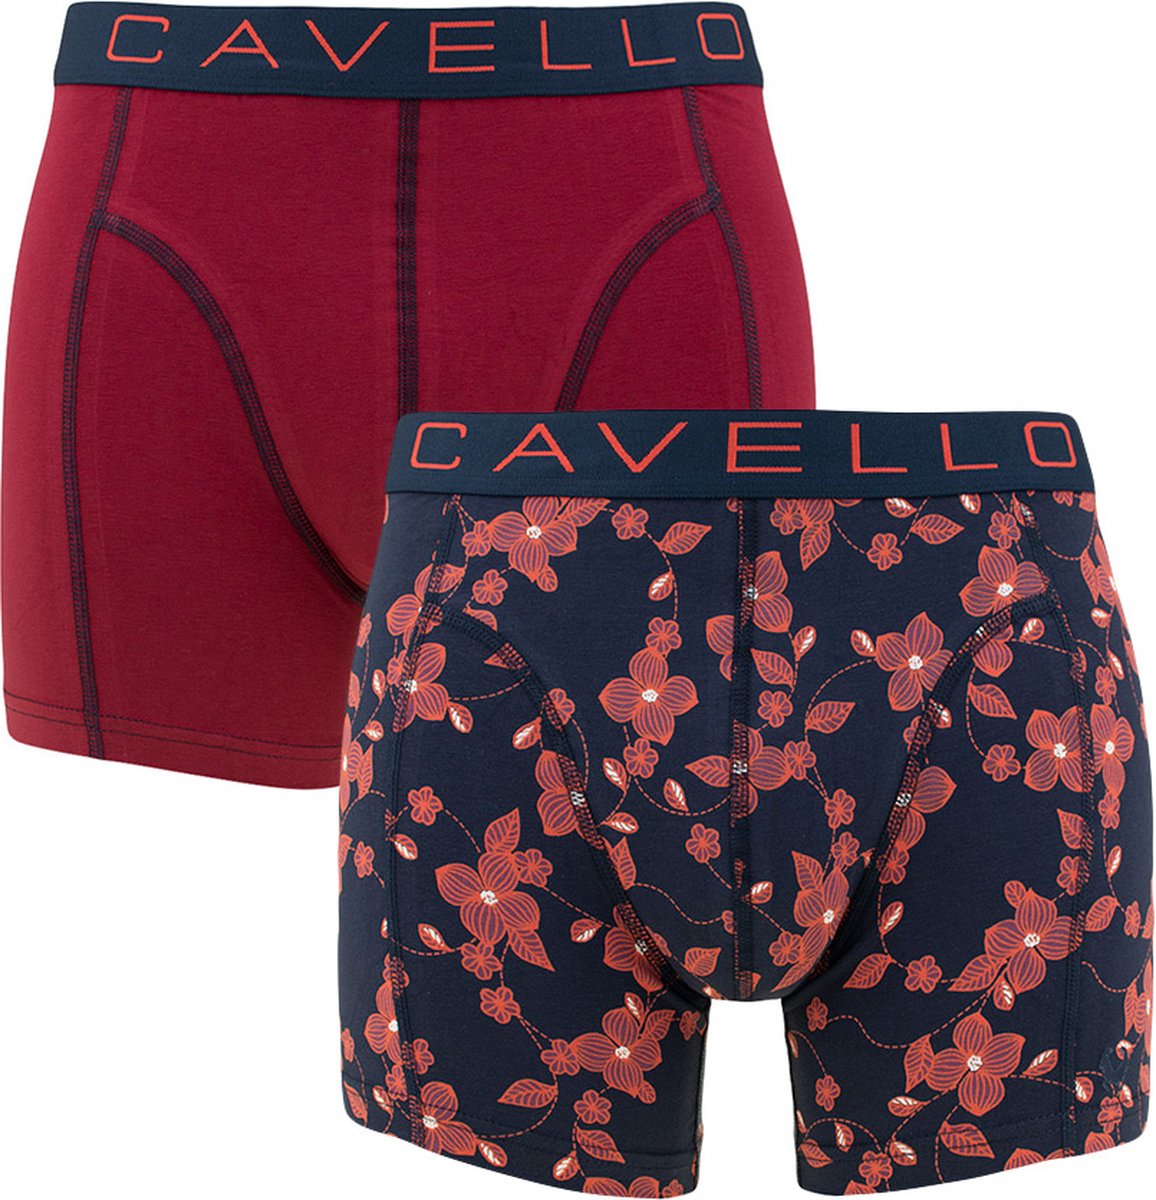 Cavello Boxershorts 2-pack Bordeaux